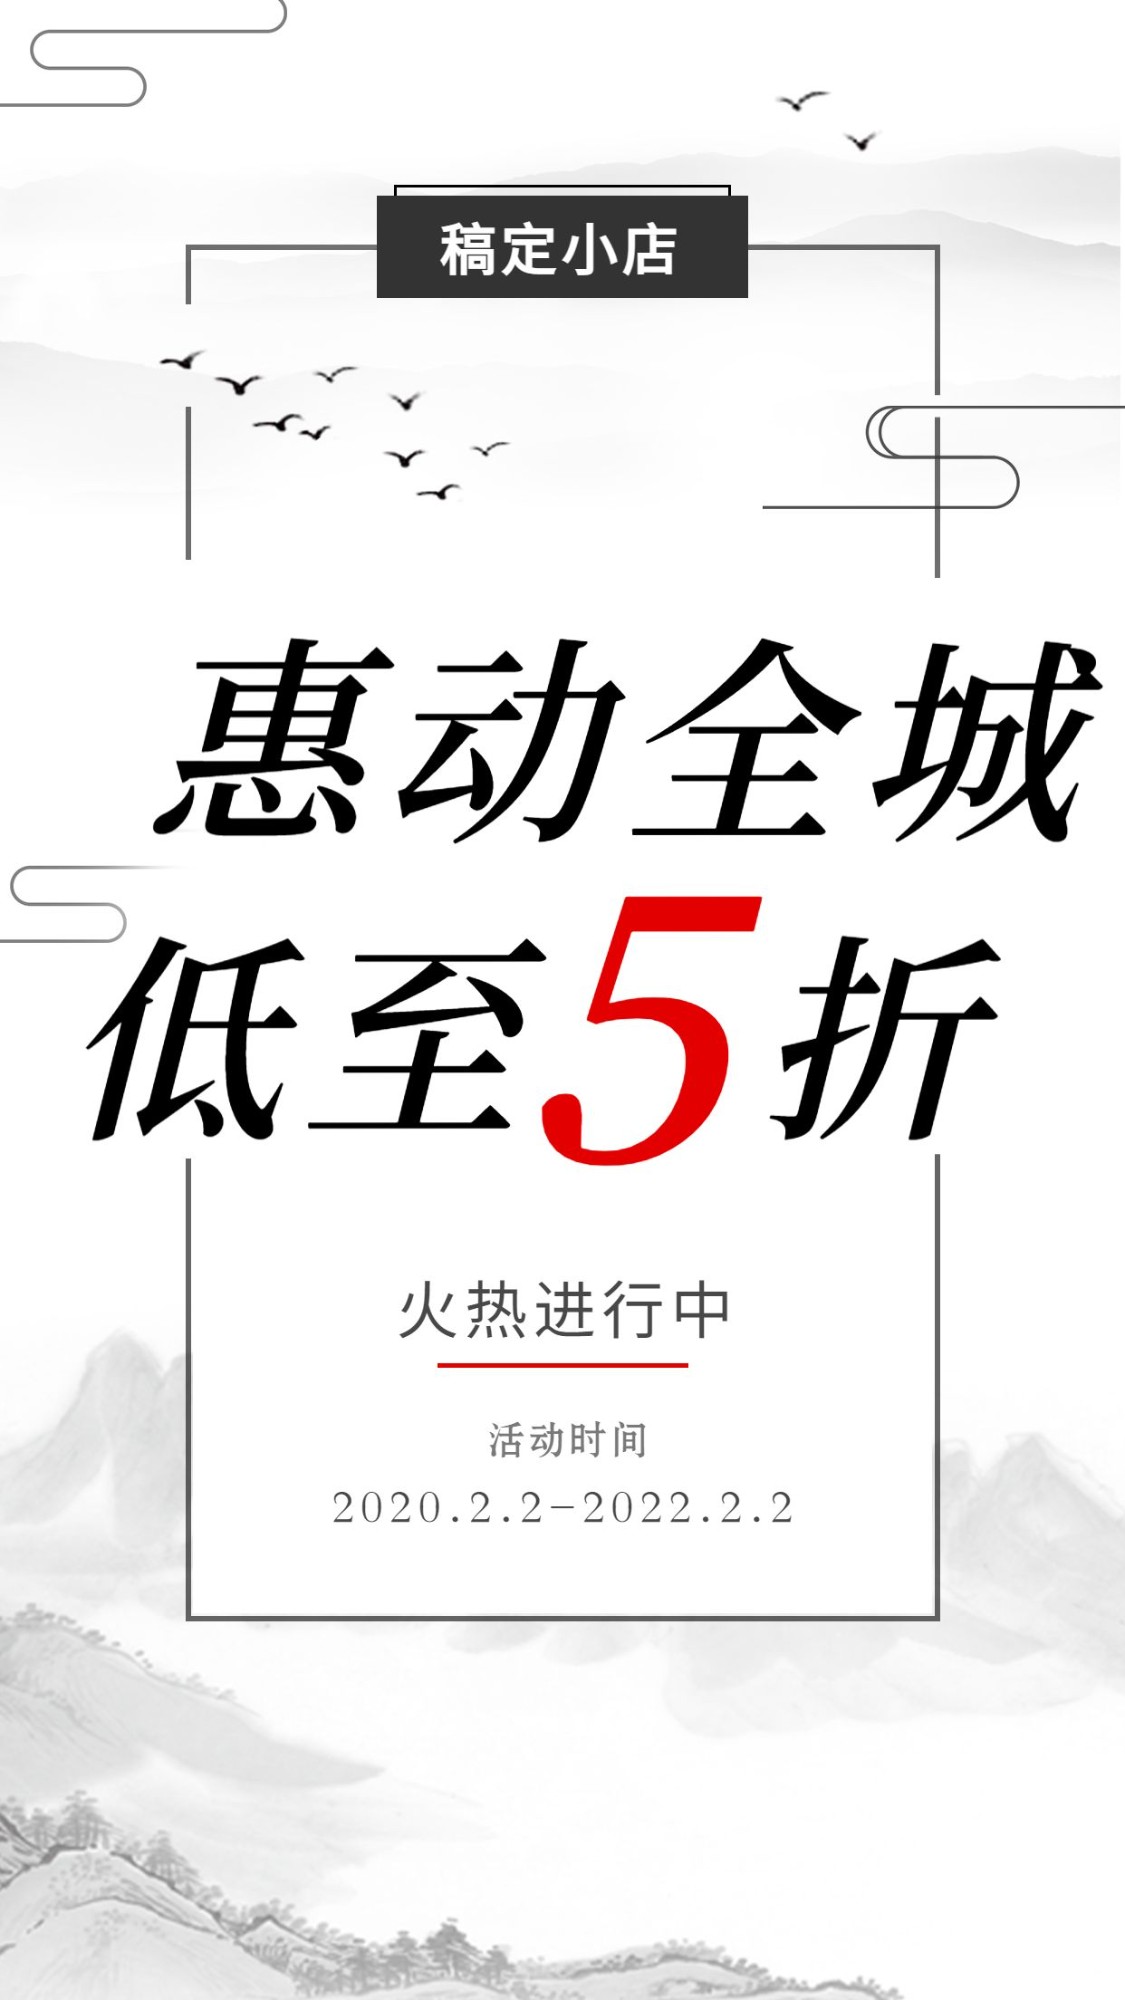 促销活动中国风手机海报预览效果